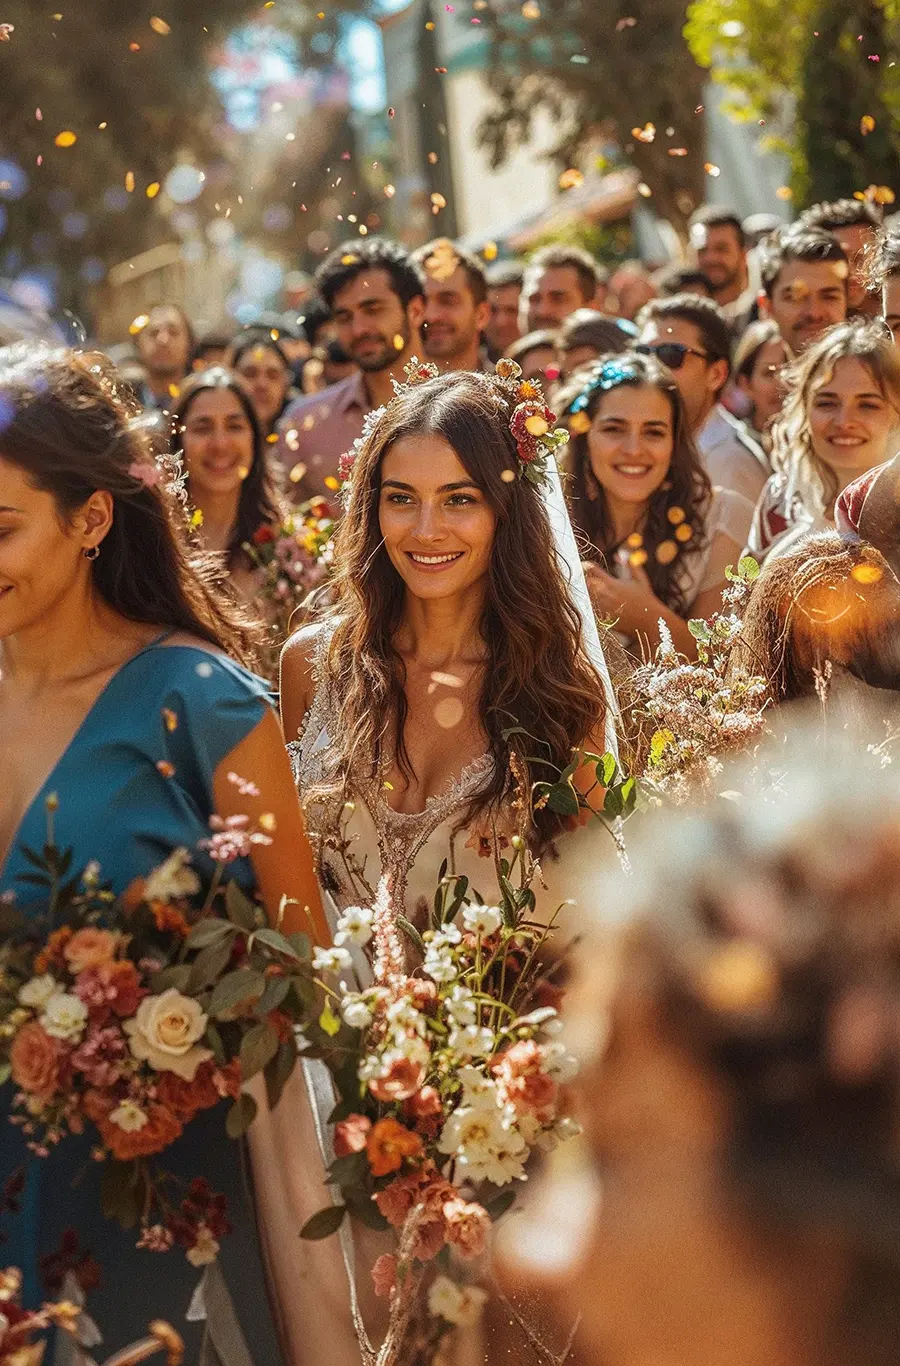 Eine griechische Braut in Begleitung der ganzen Hochzeitsgesellschaft